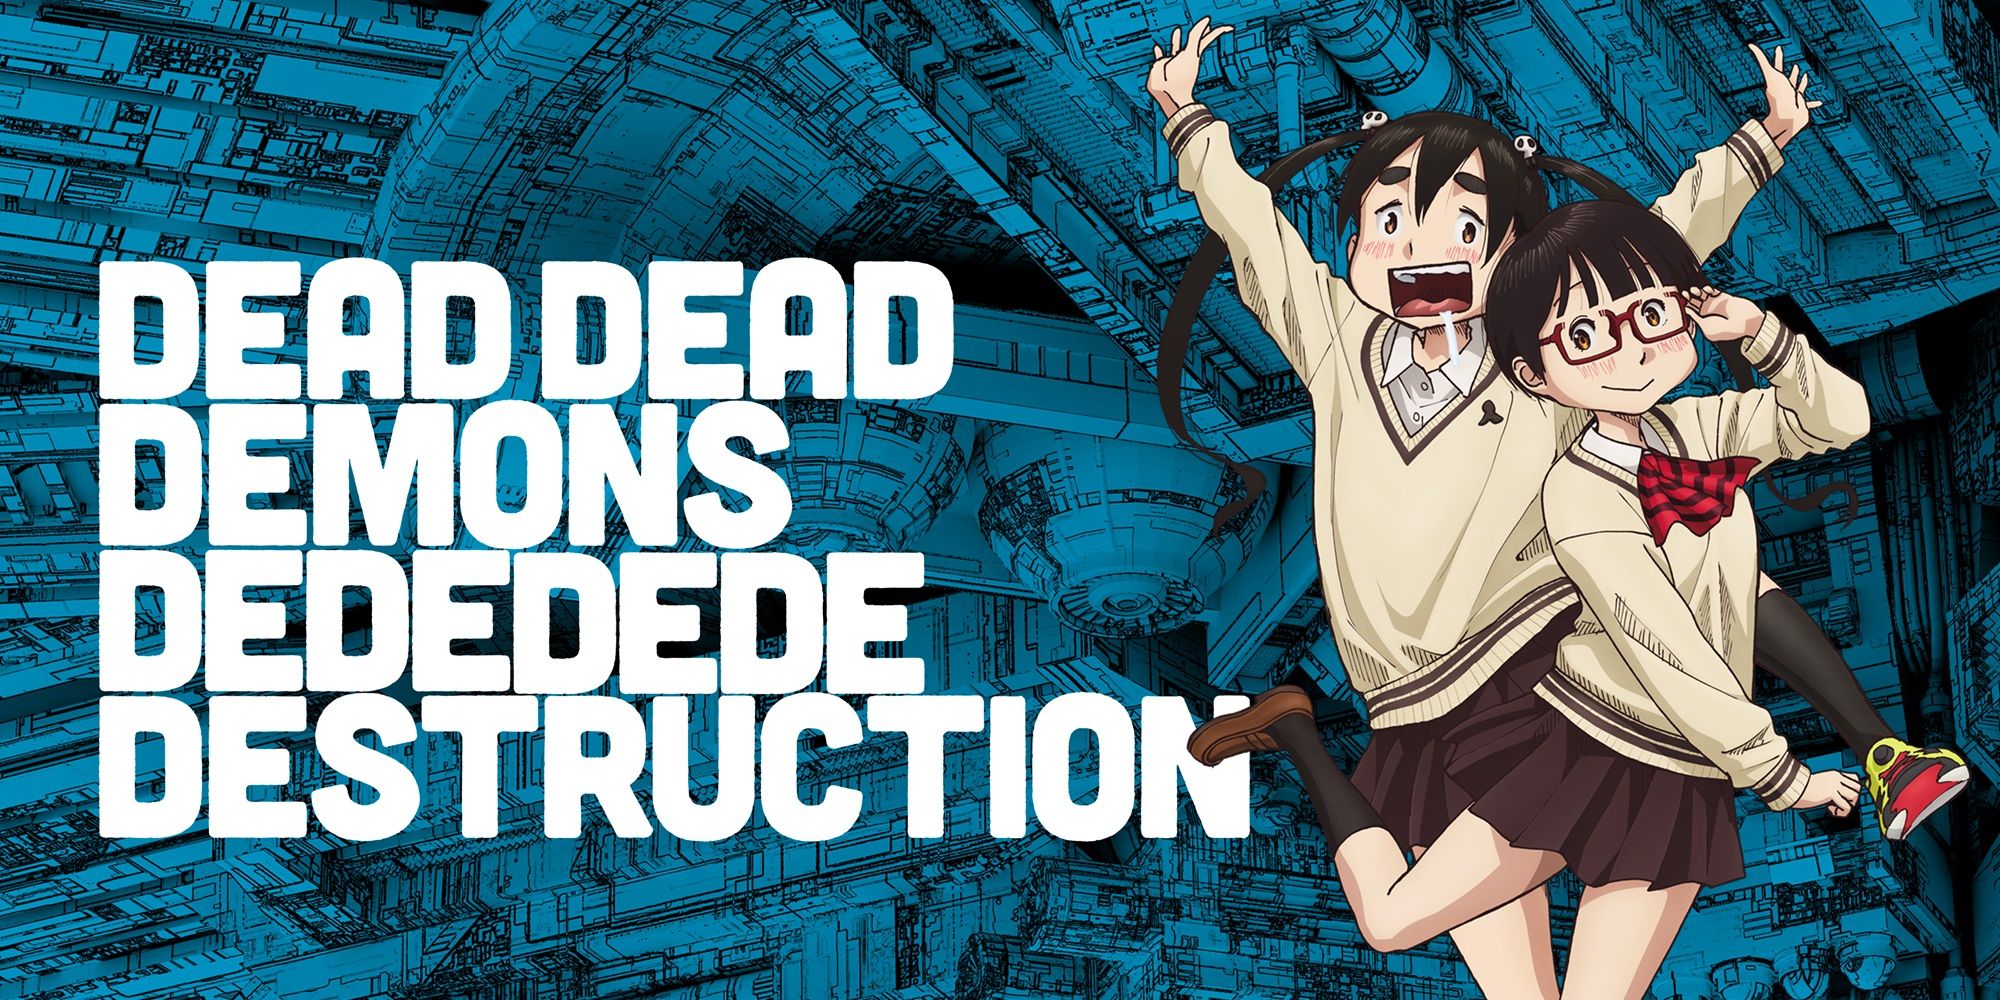 Dead Dead Demons Dededede Destruction получила дату выхода Crunchyroll во всем мире